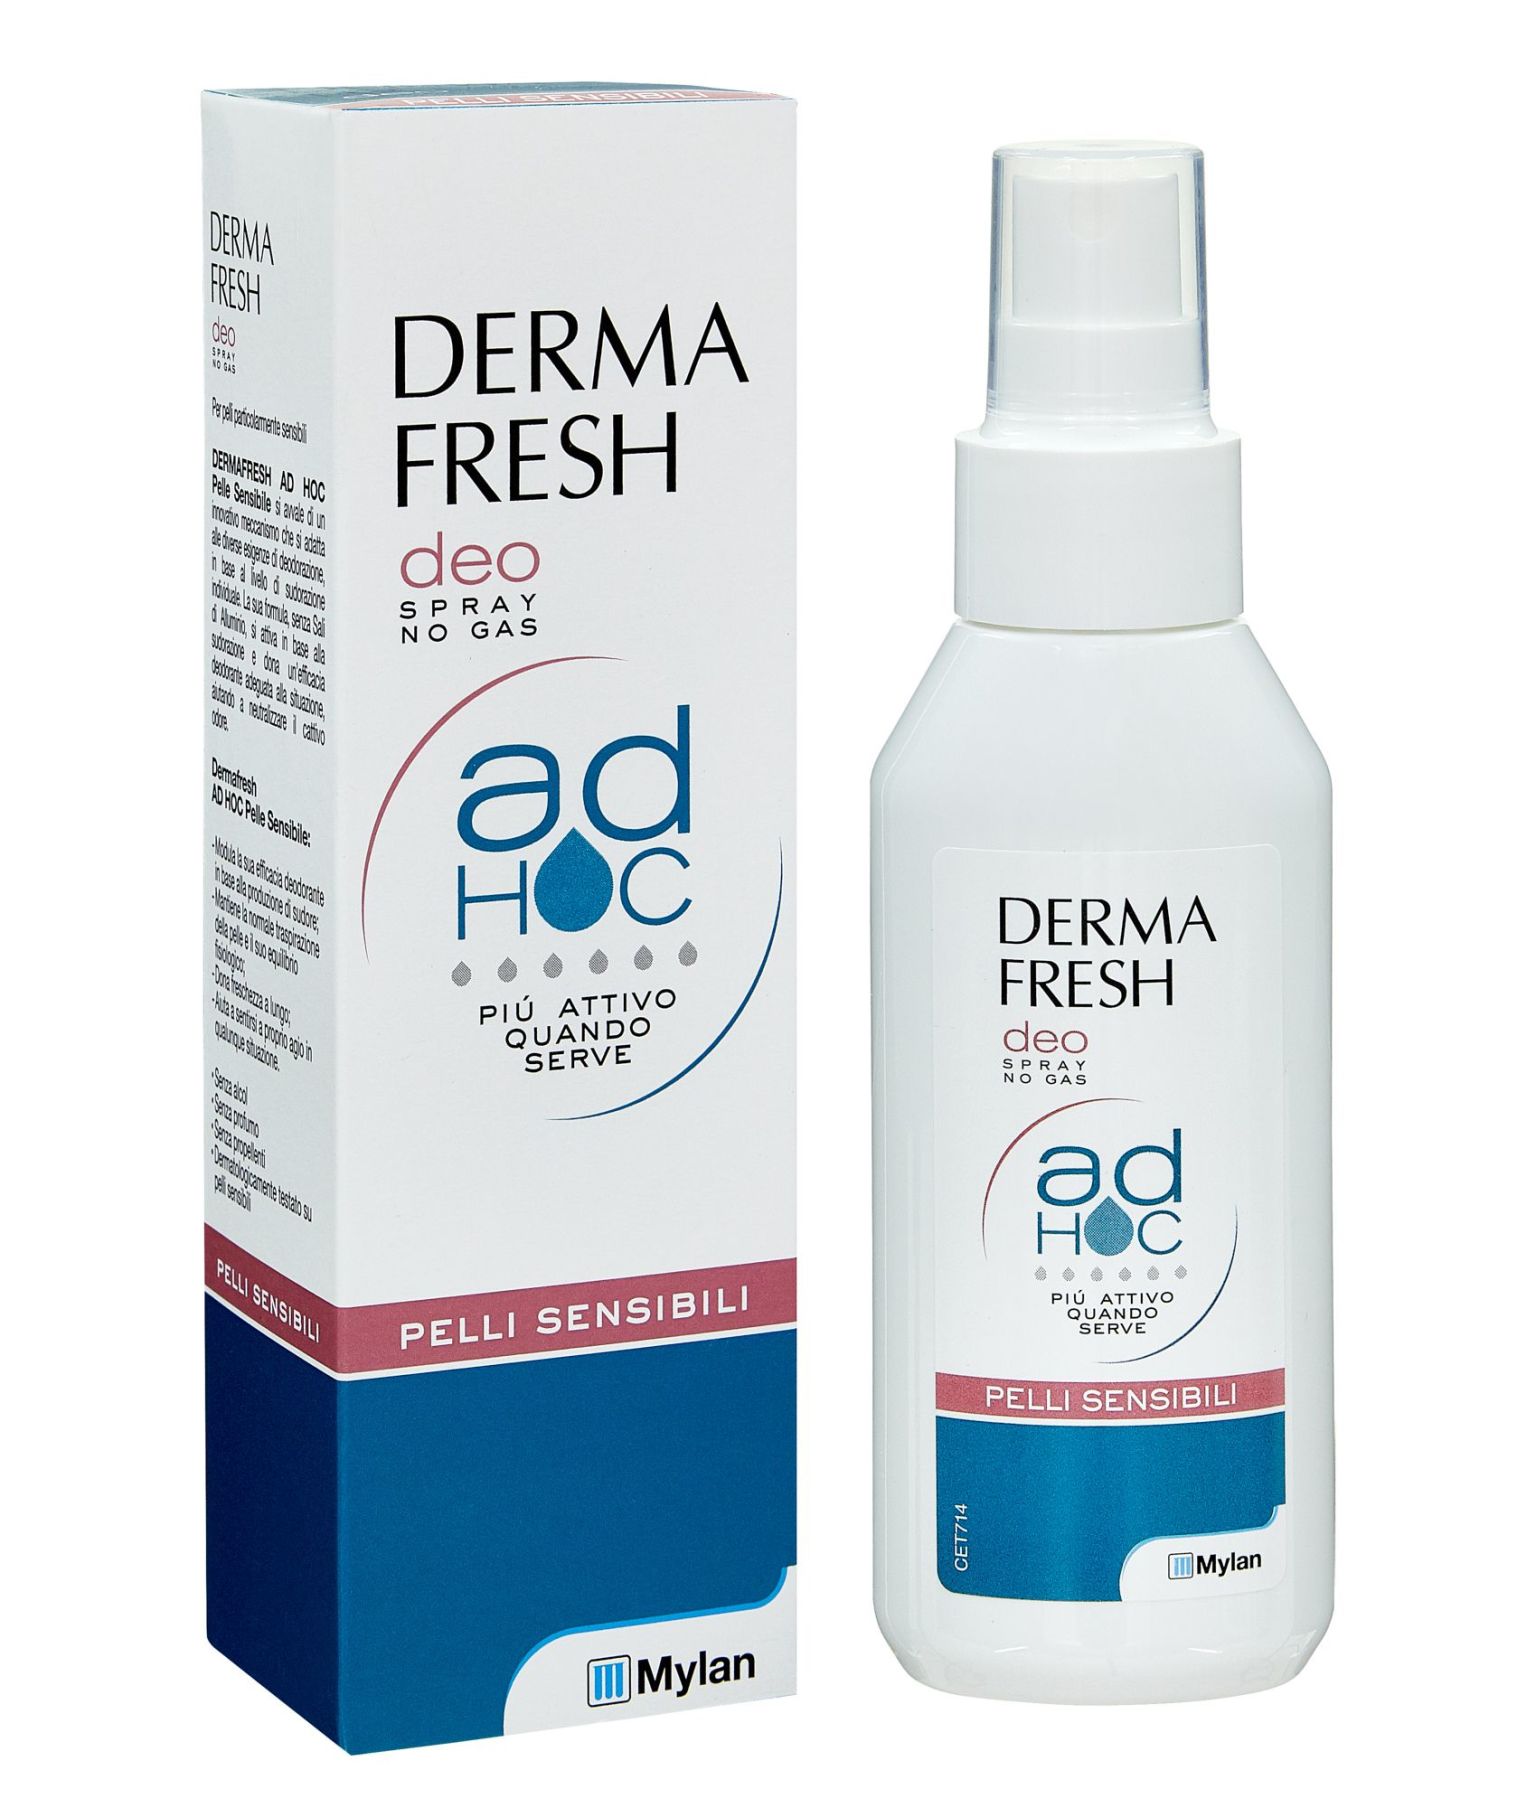 942599566 - Dermafresh Ad Hoc deodorante spray per pelli particolarmente sensibili 100ml - 4703375_2.jpg